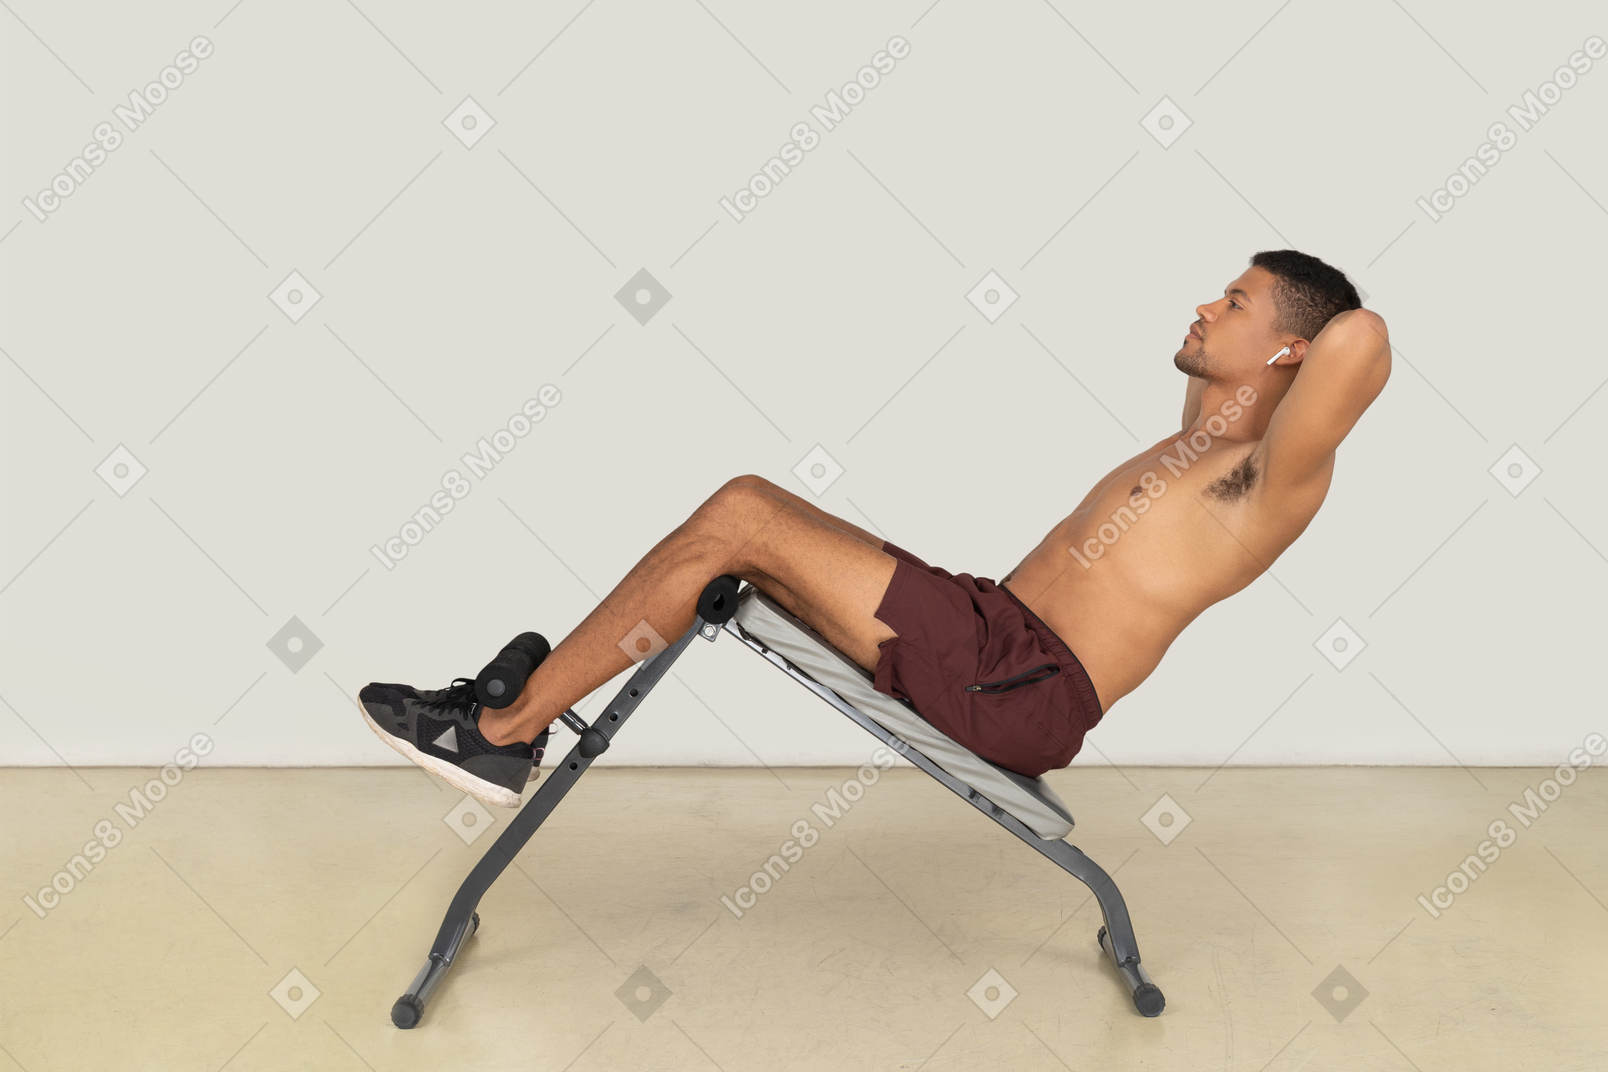 Vista lateral do homem fazendo exercícios abdominais no banco